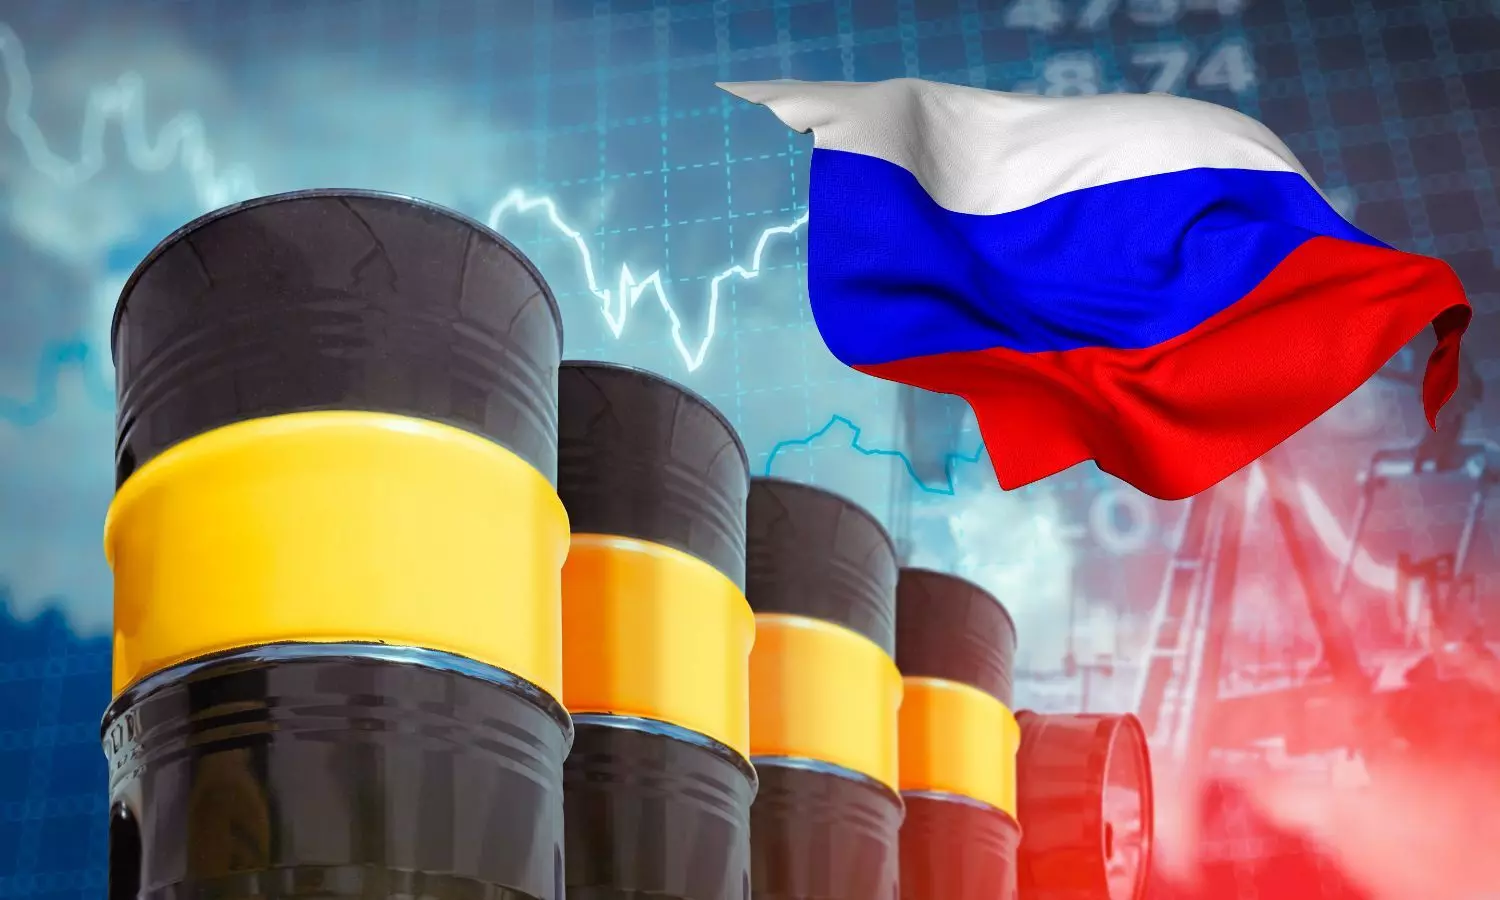 Crude oil barrels and Russian Flag